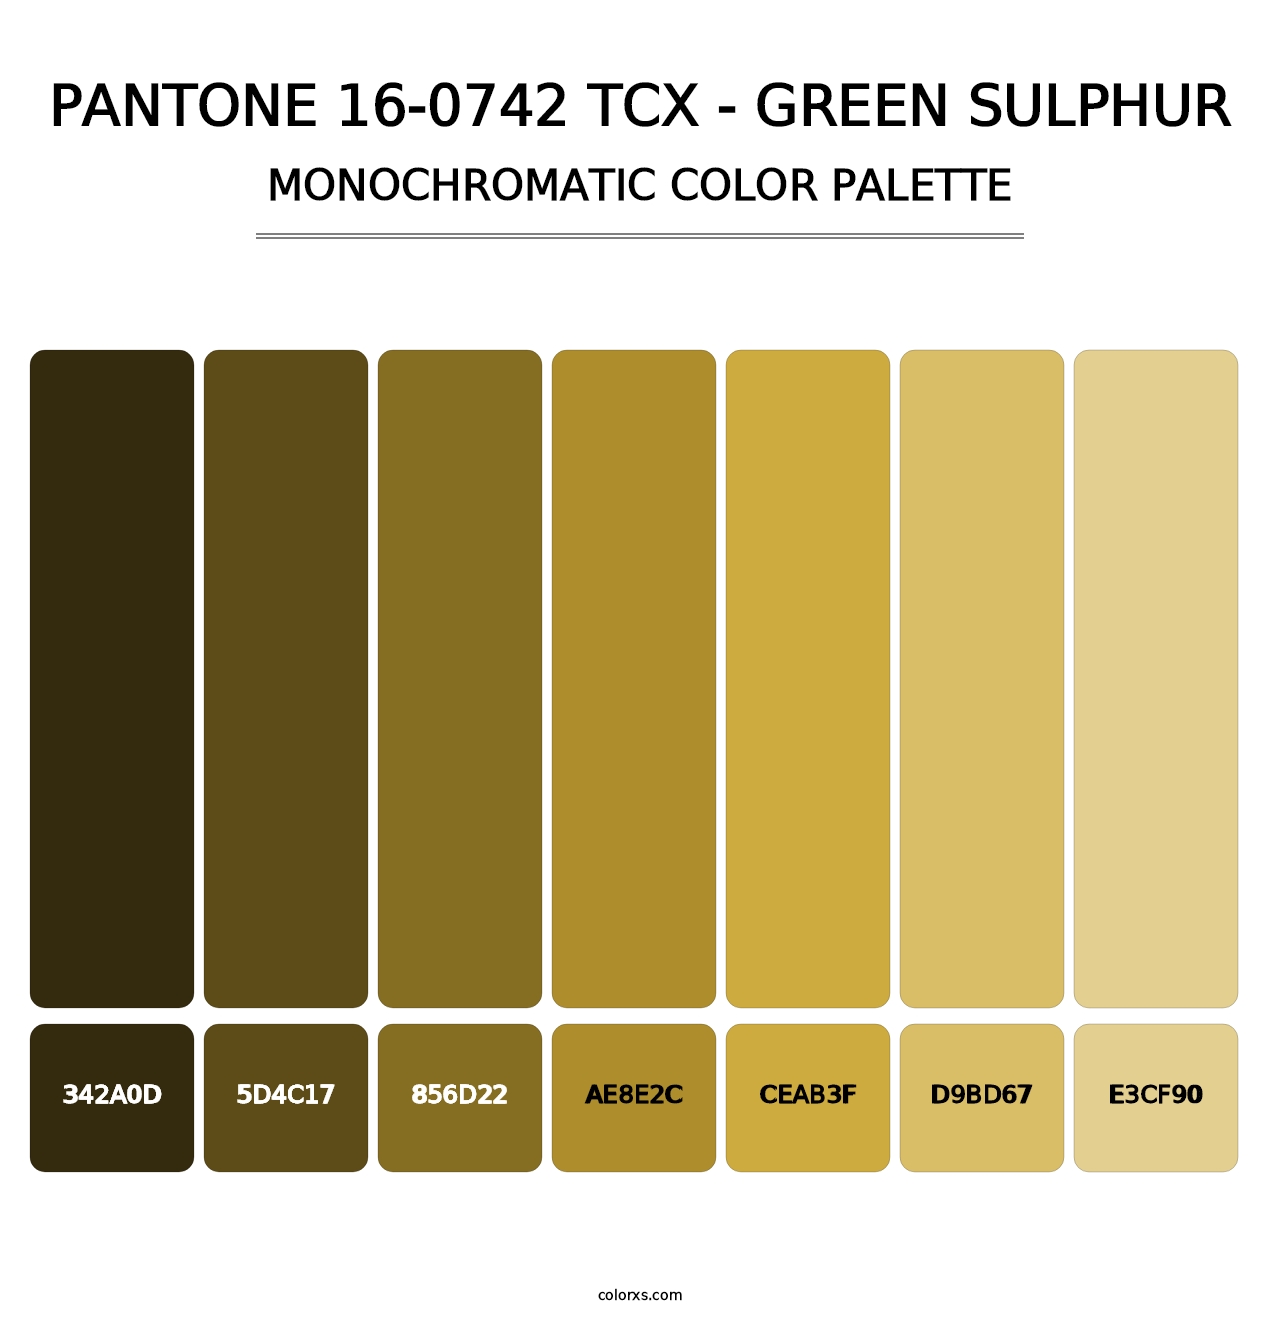 PANTONE 16-0742 TCX - Green Sulphur - Monochromatic Color Palette